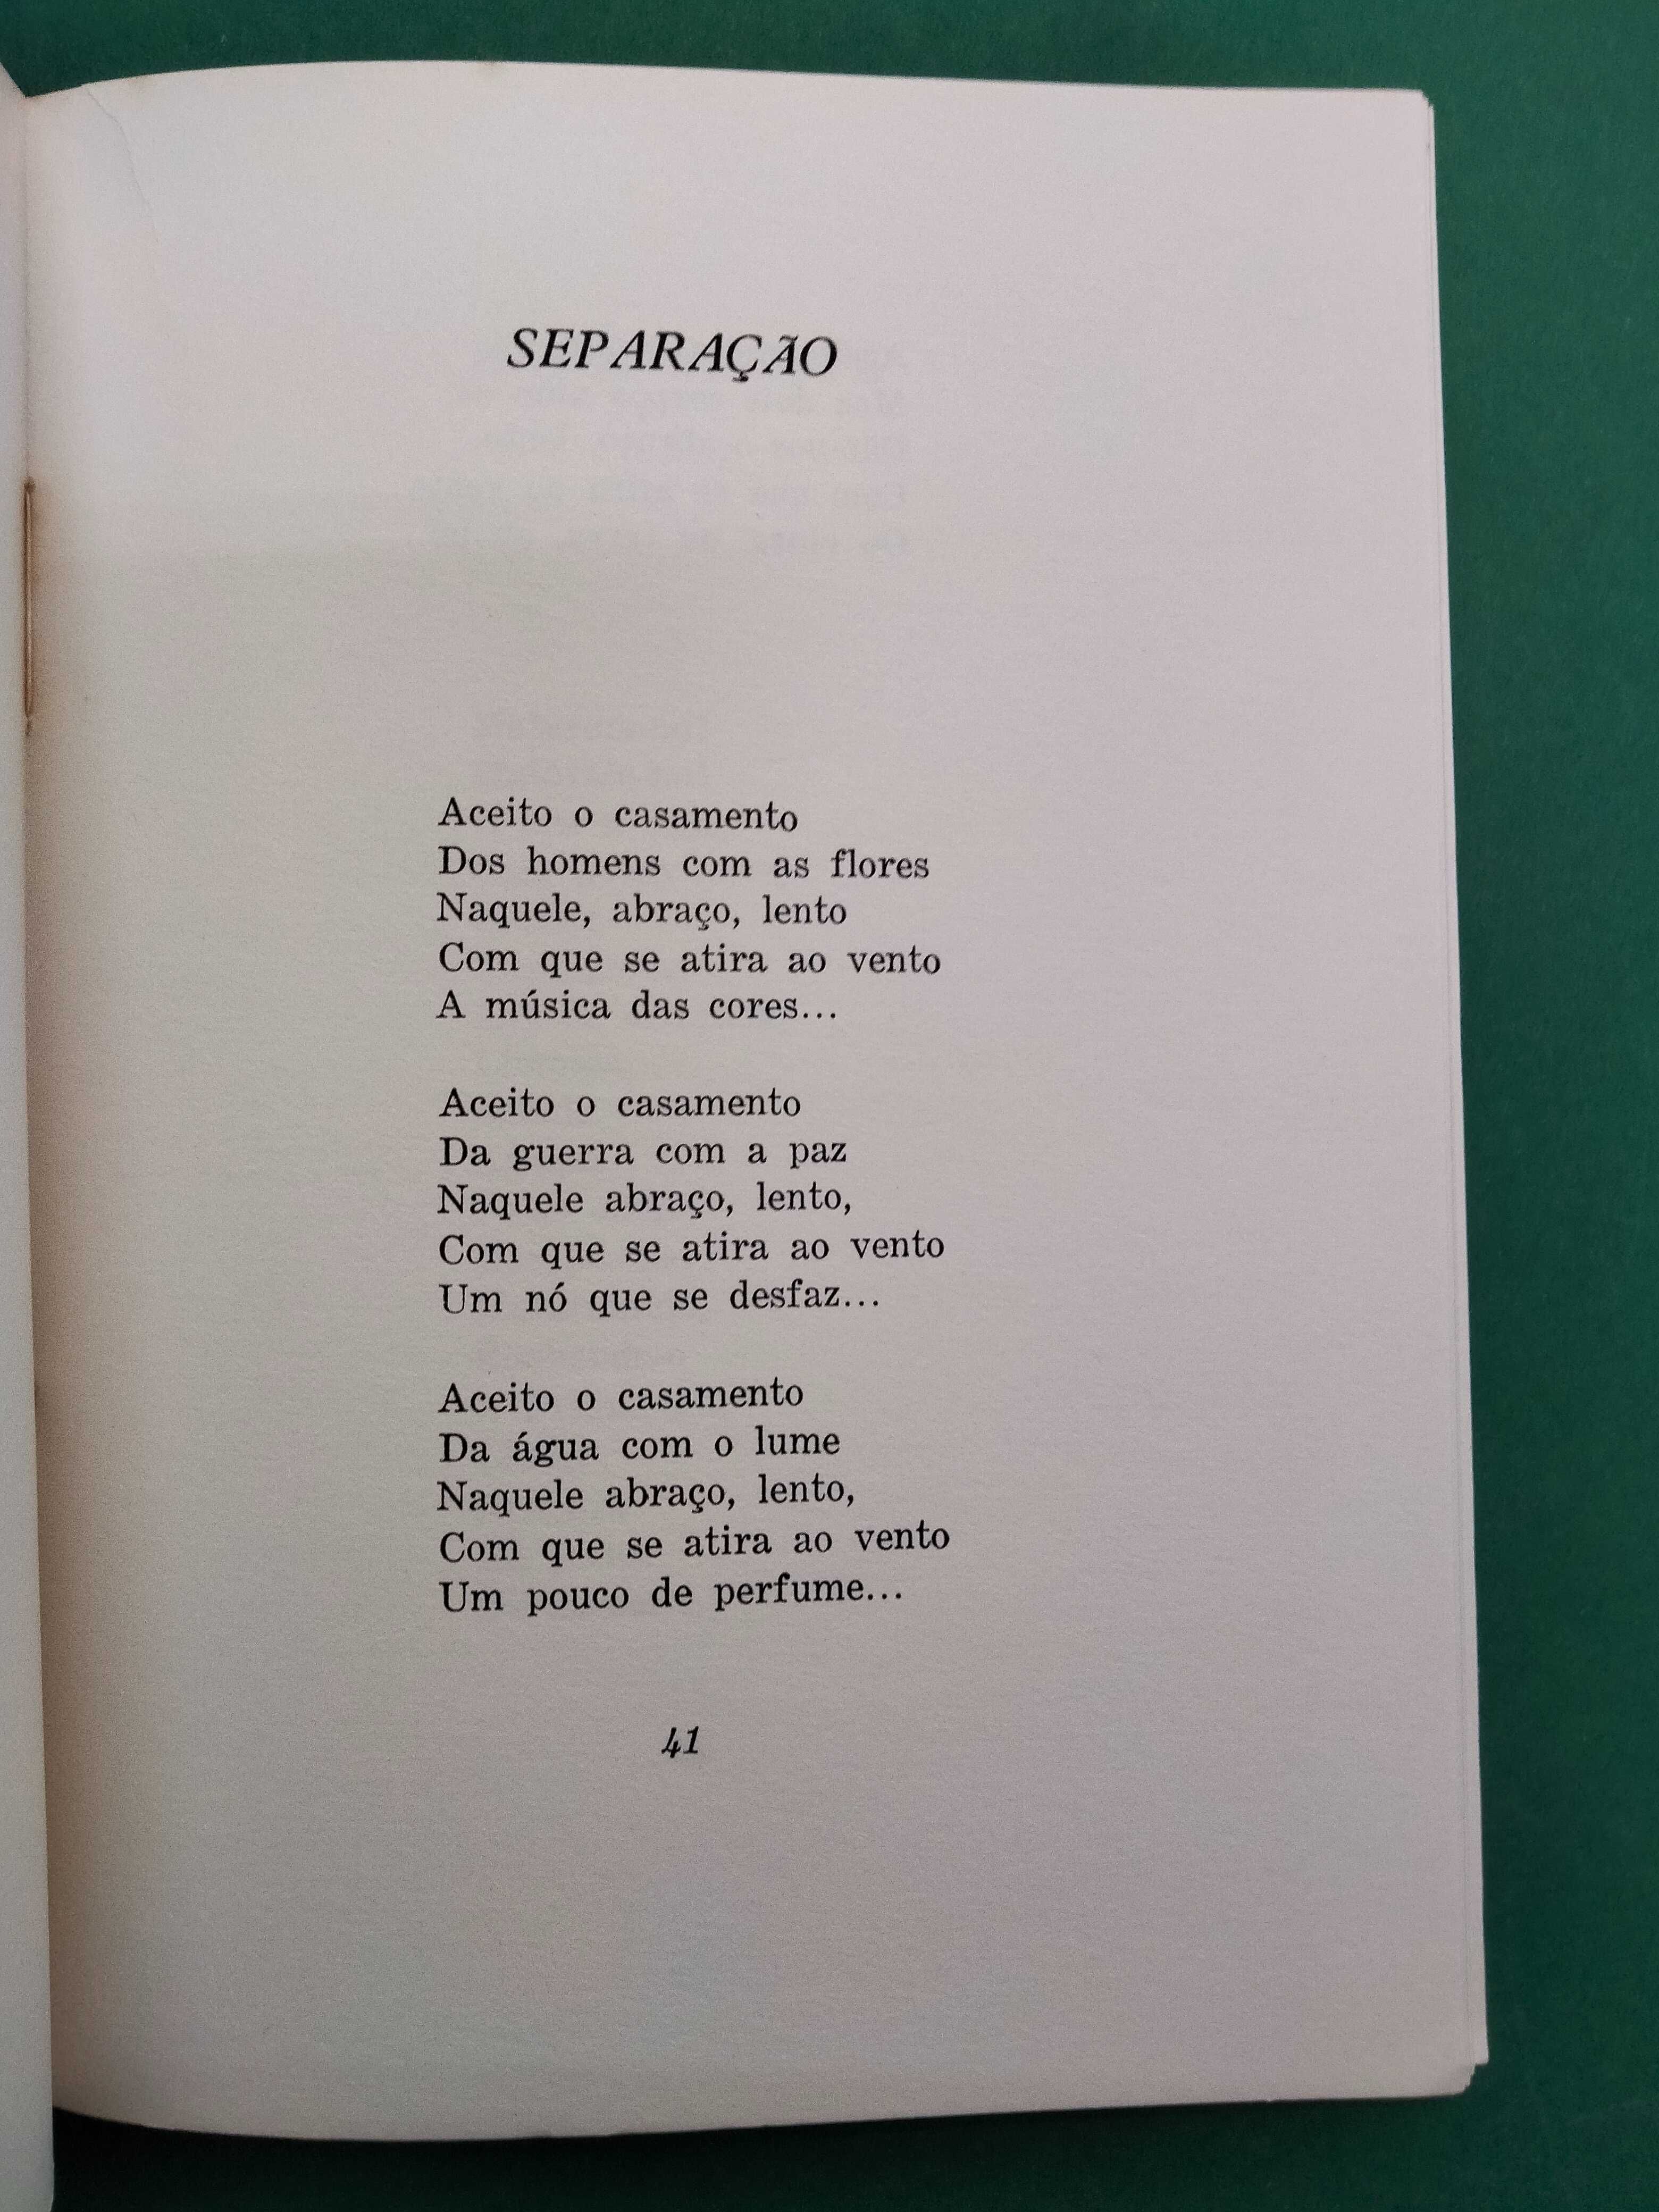 Nós Portugueses Somos Castos - Pedro Homem de Mello